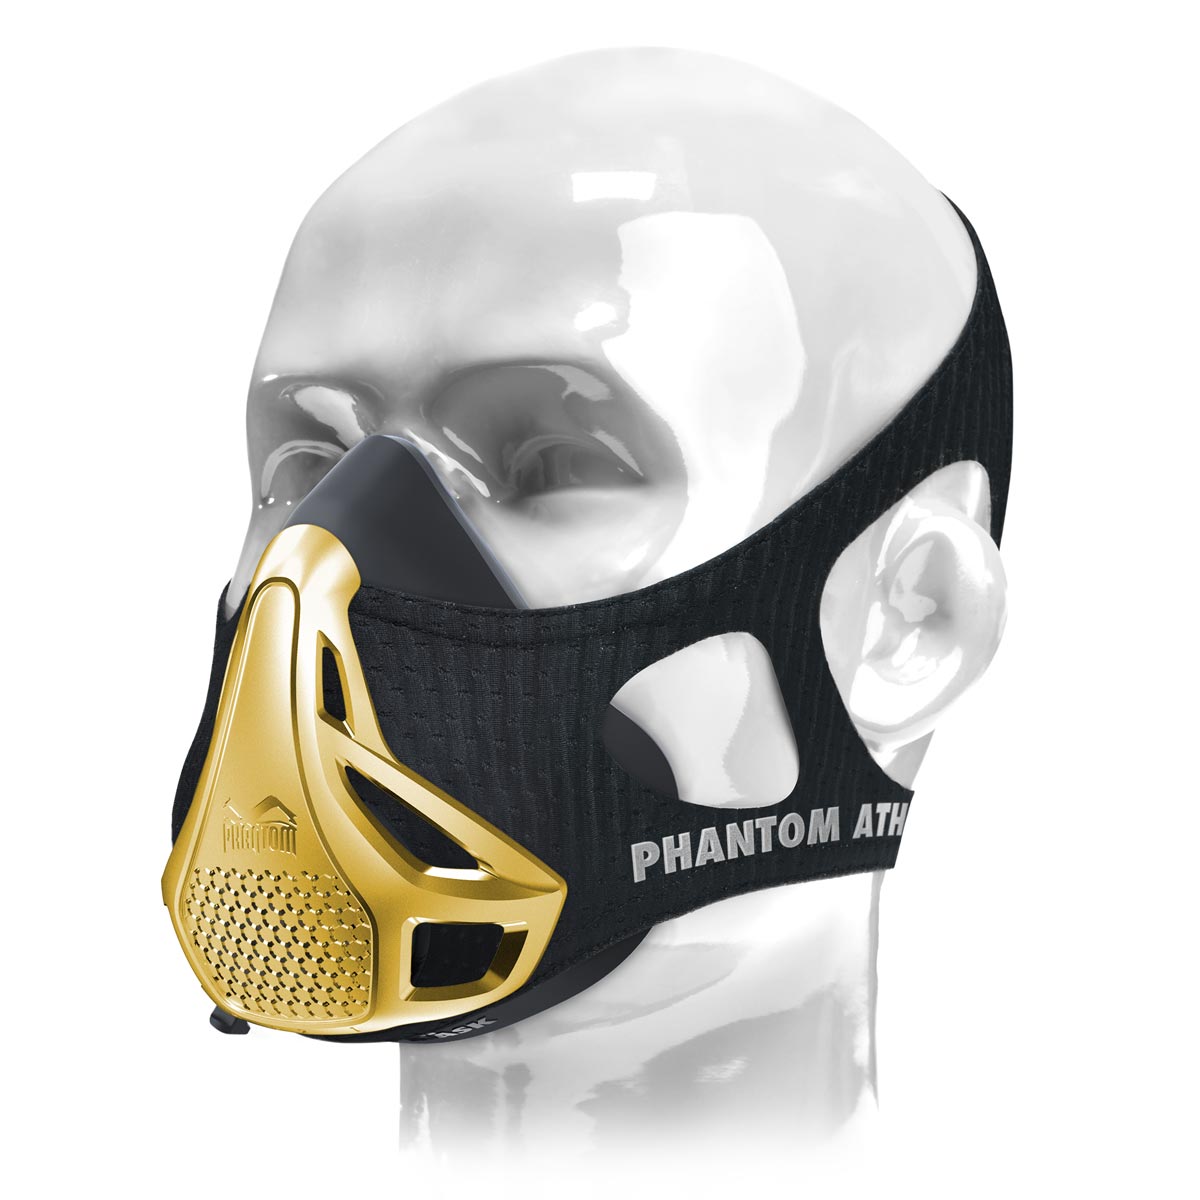 Phantom träningsmasken. Originalet. Patenterad och tilldelad för att ta din kondition till nästa nivå. Nu i begränsad guldupplaga.